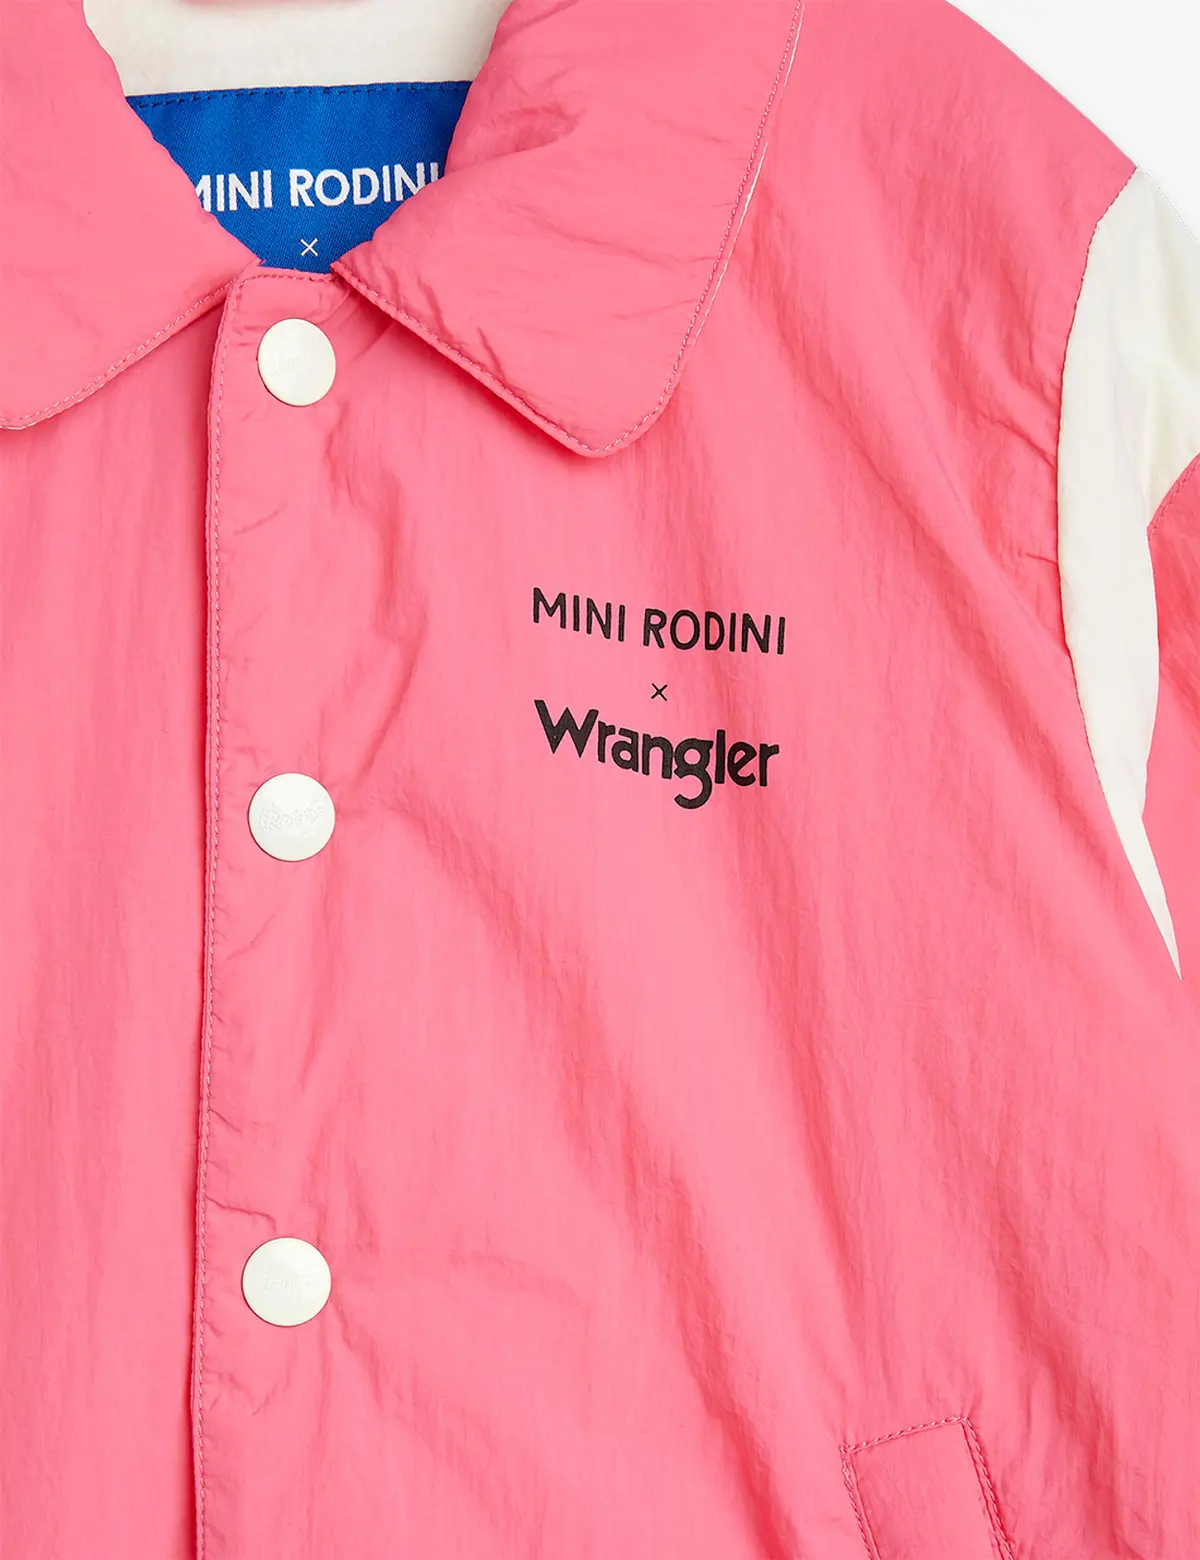 M.Rodini x Wrangler Padded Jacket Pink-image-4